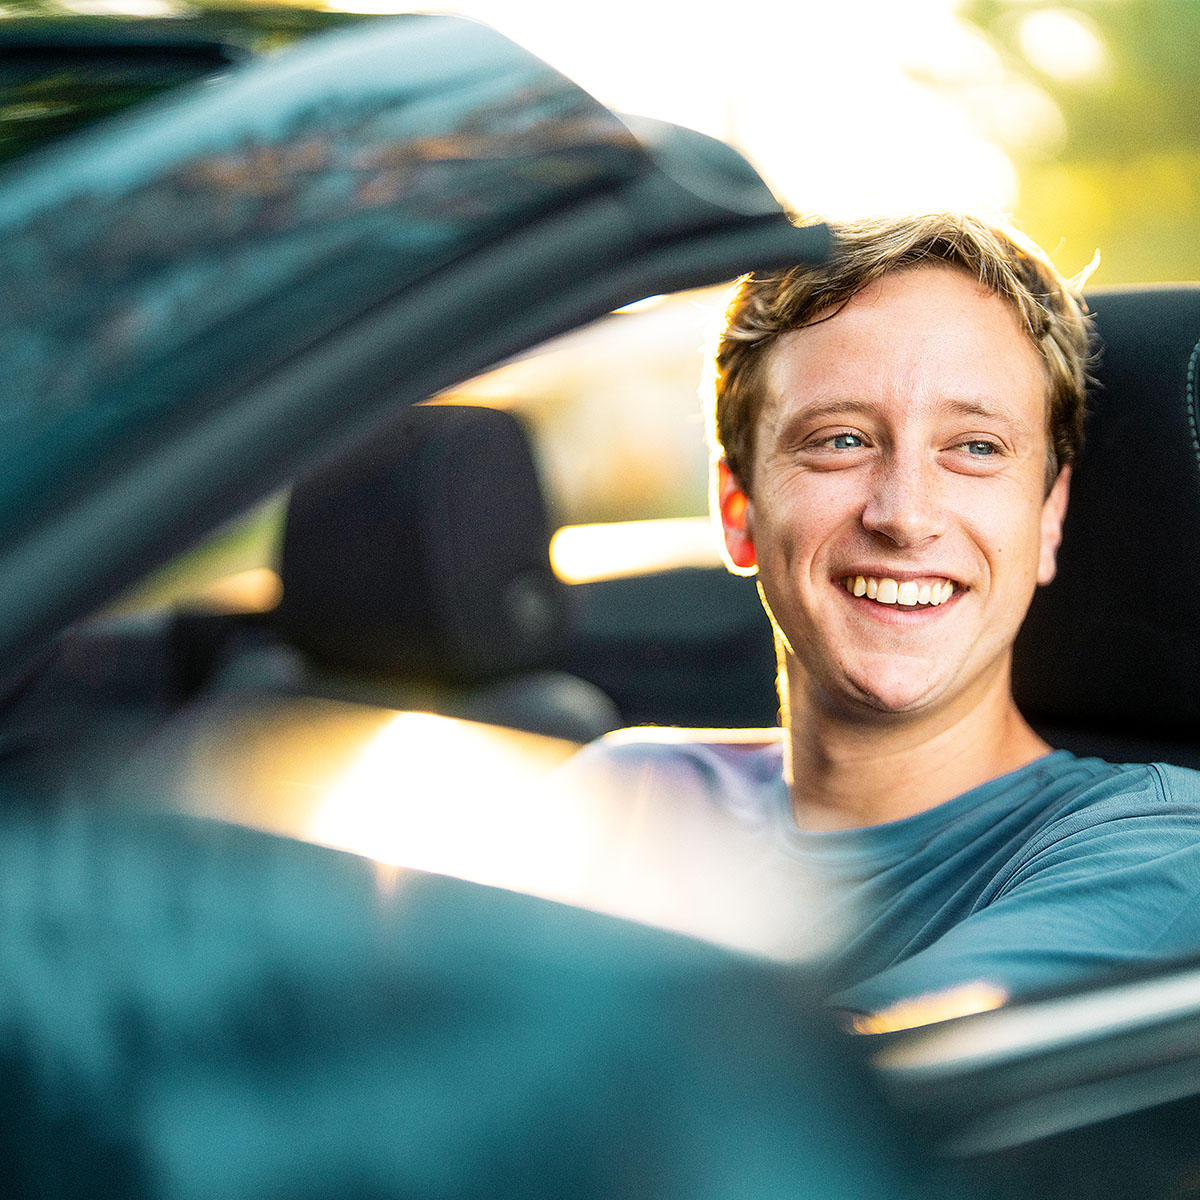 Enterprise Rent-A-Car à Saint-Hilaire: Enterprise customer smiling while driving a convertible rental car